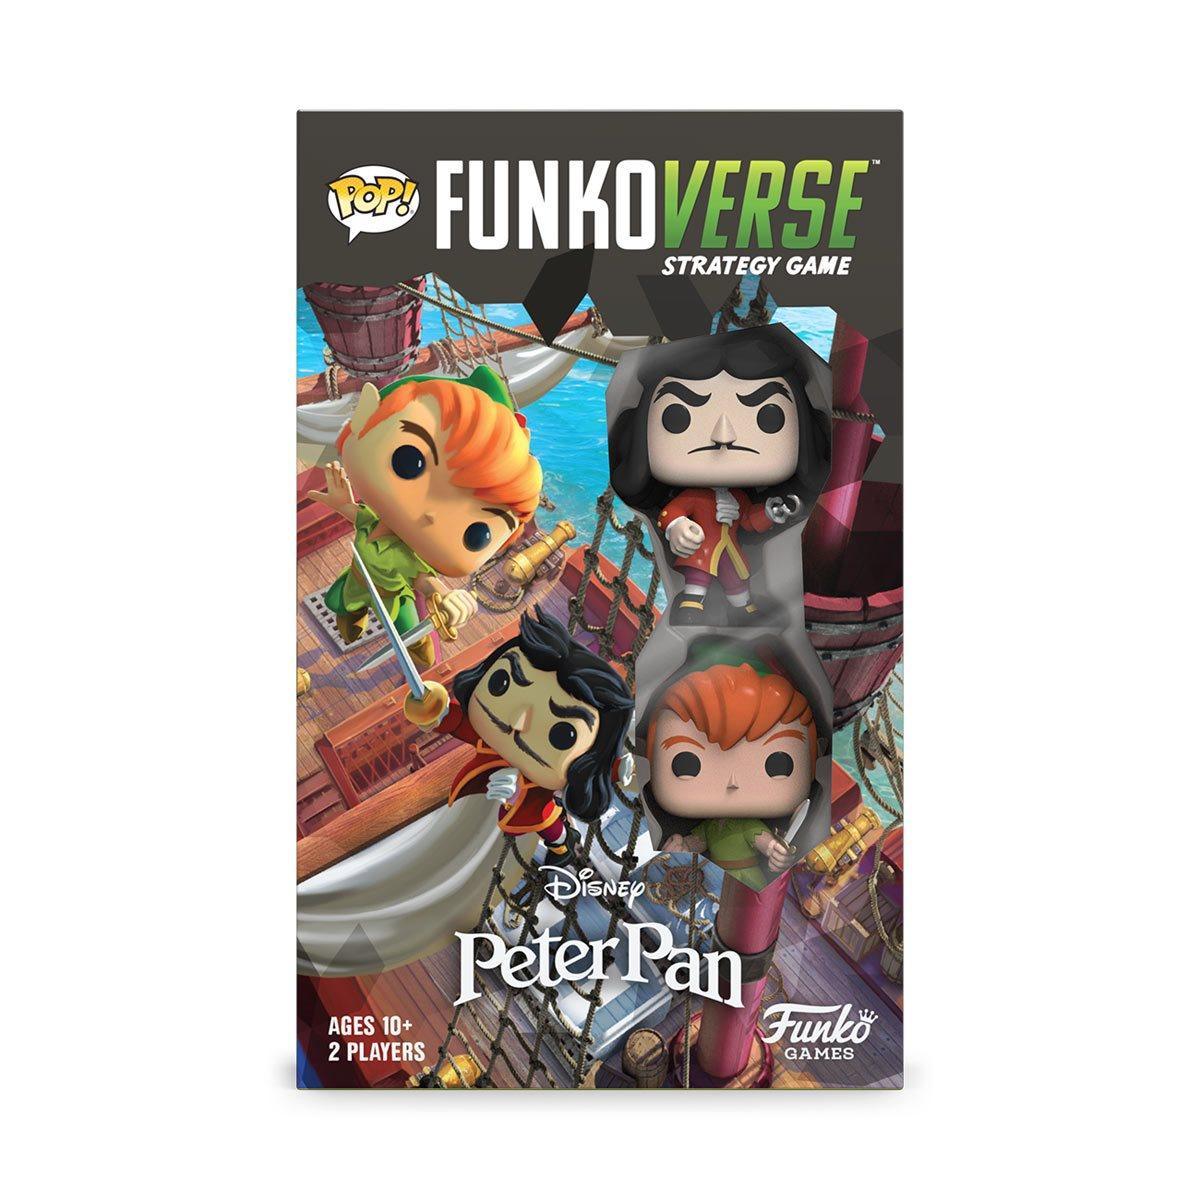 FUN60863 Funkoverse - Peter Pan 100 2-Pack Expandalone Game - Funko - Titan Pop Culture